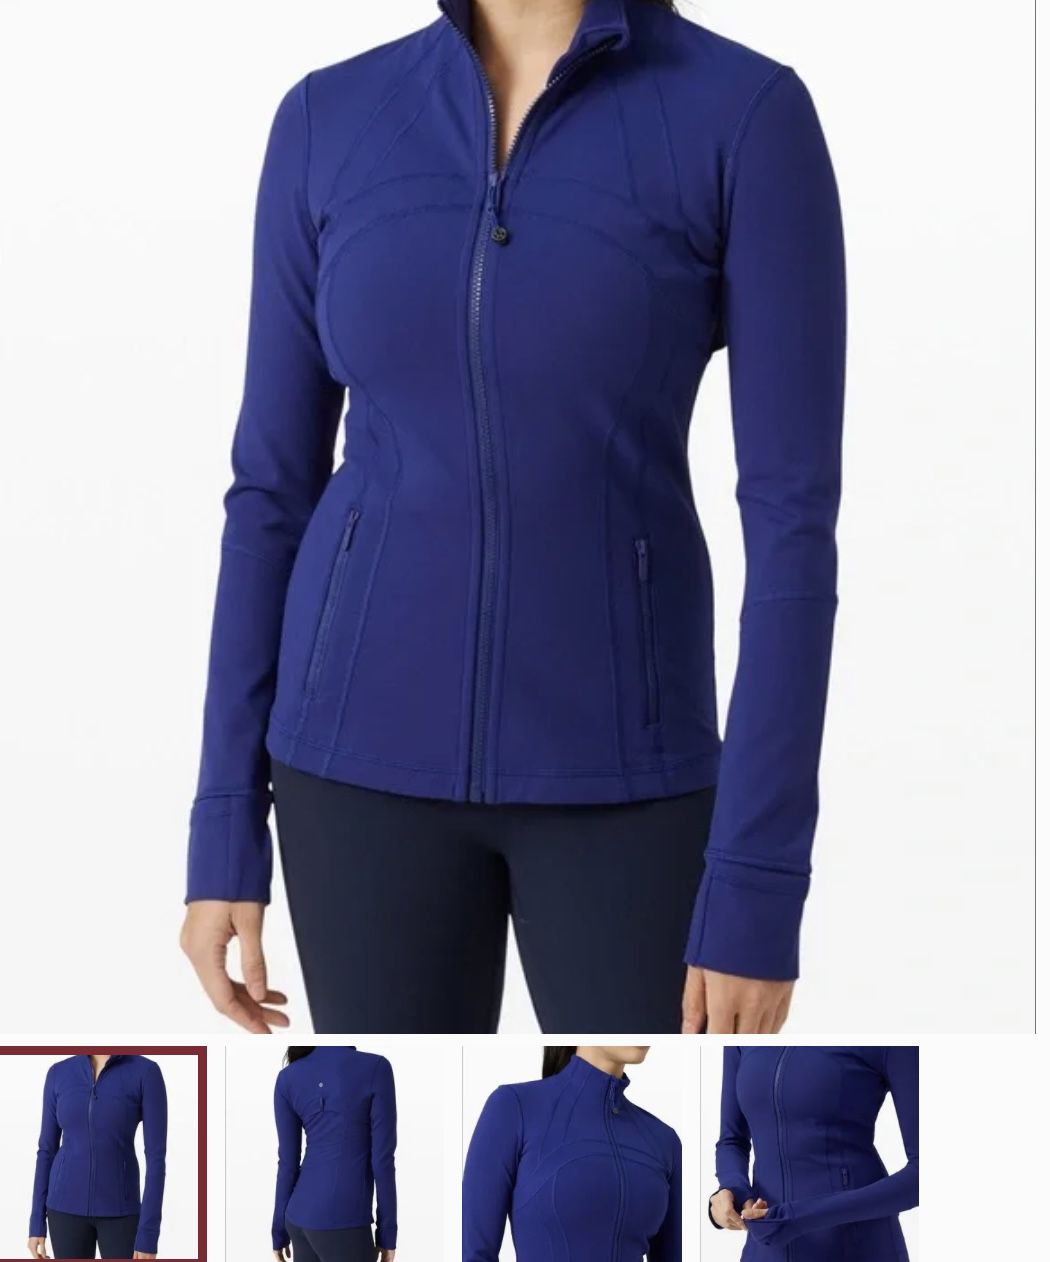 NWT Lululemon Define Jacket Larkspur Blue(size 6) for Sale in Chandler, AZ  - OfferUp